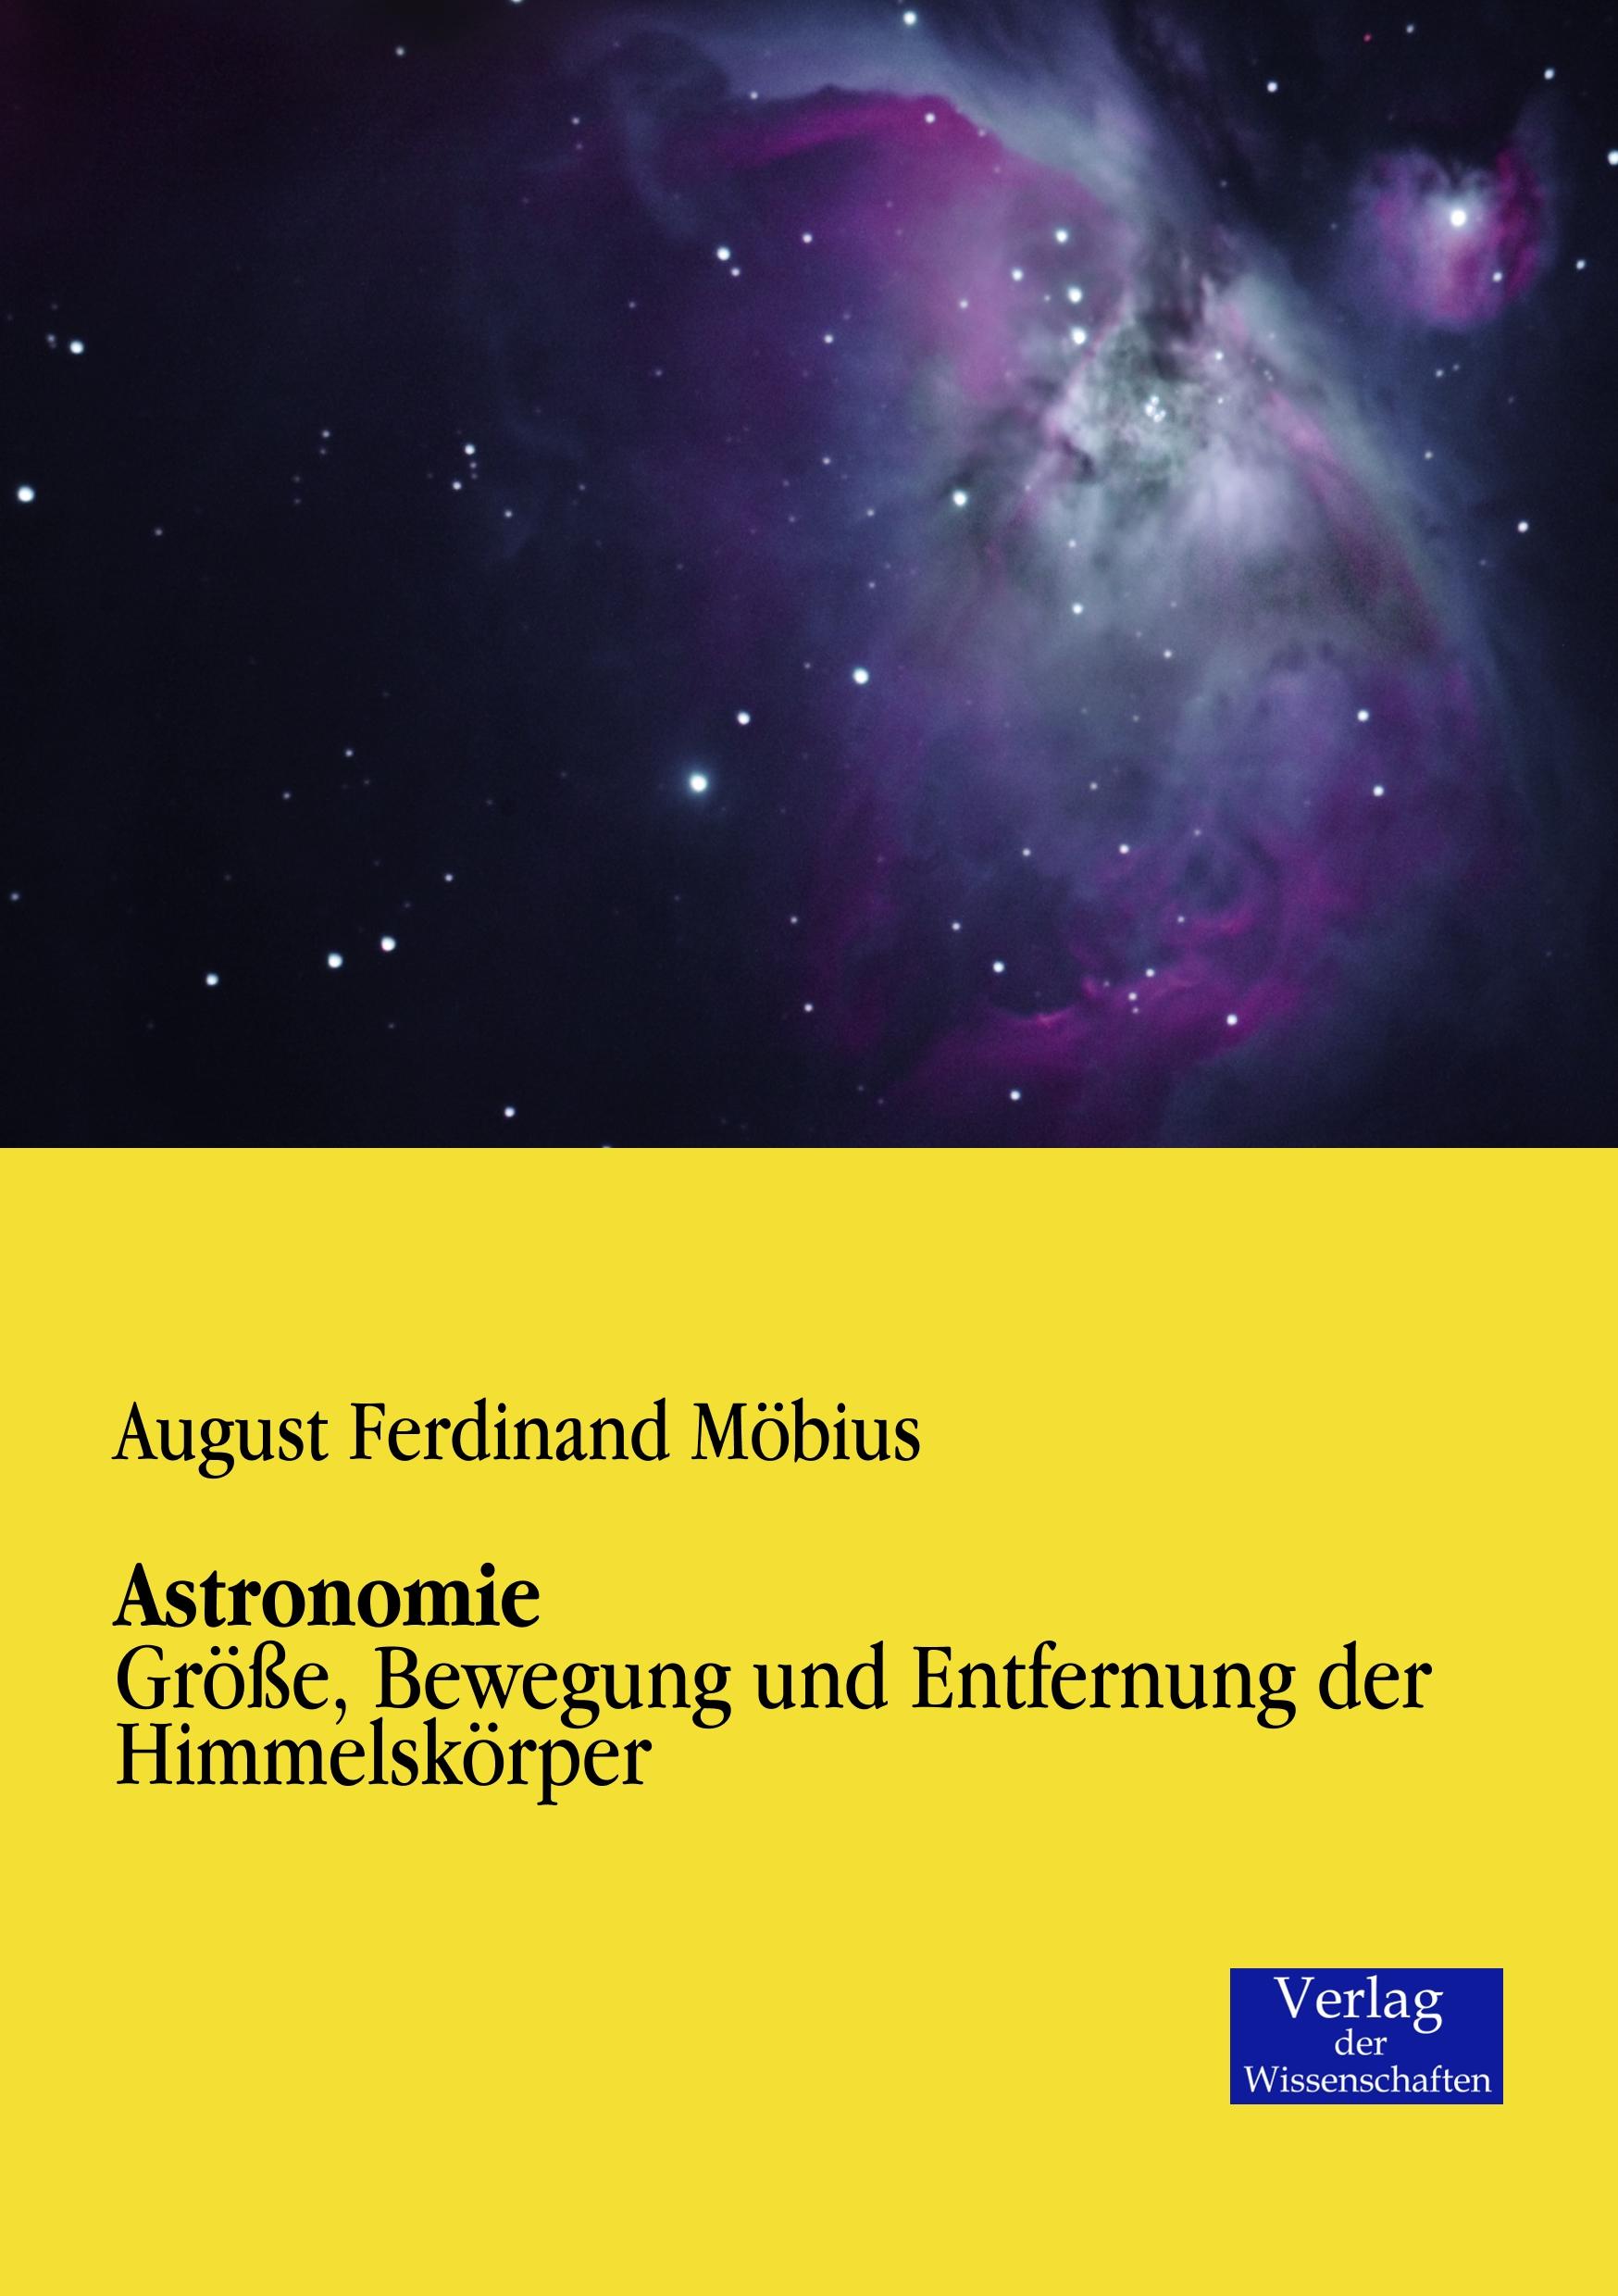 Astronomie / Größe, Bewegung und Entfernung der Himmelskörper / August Ferdinand Möbius / Taschenbuch / Paperback / 176 S. / Deutsch / 2019 / Vero Verlag / EAN 9783957001221 - Möbius, August Ferdinand